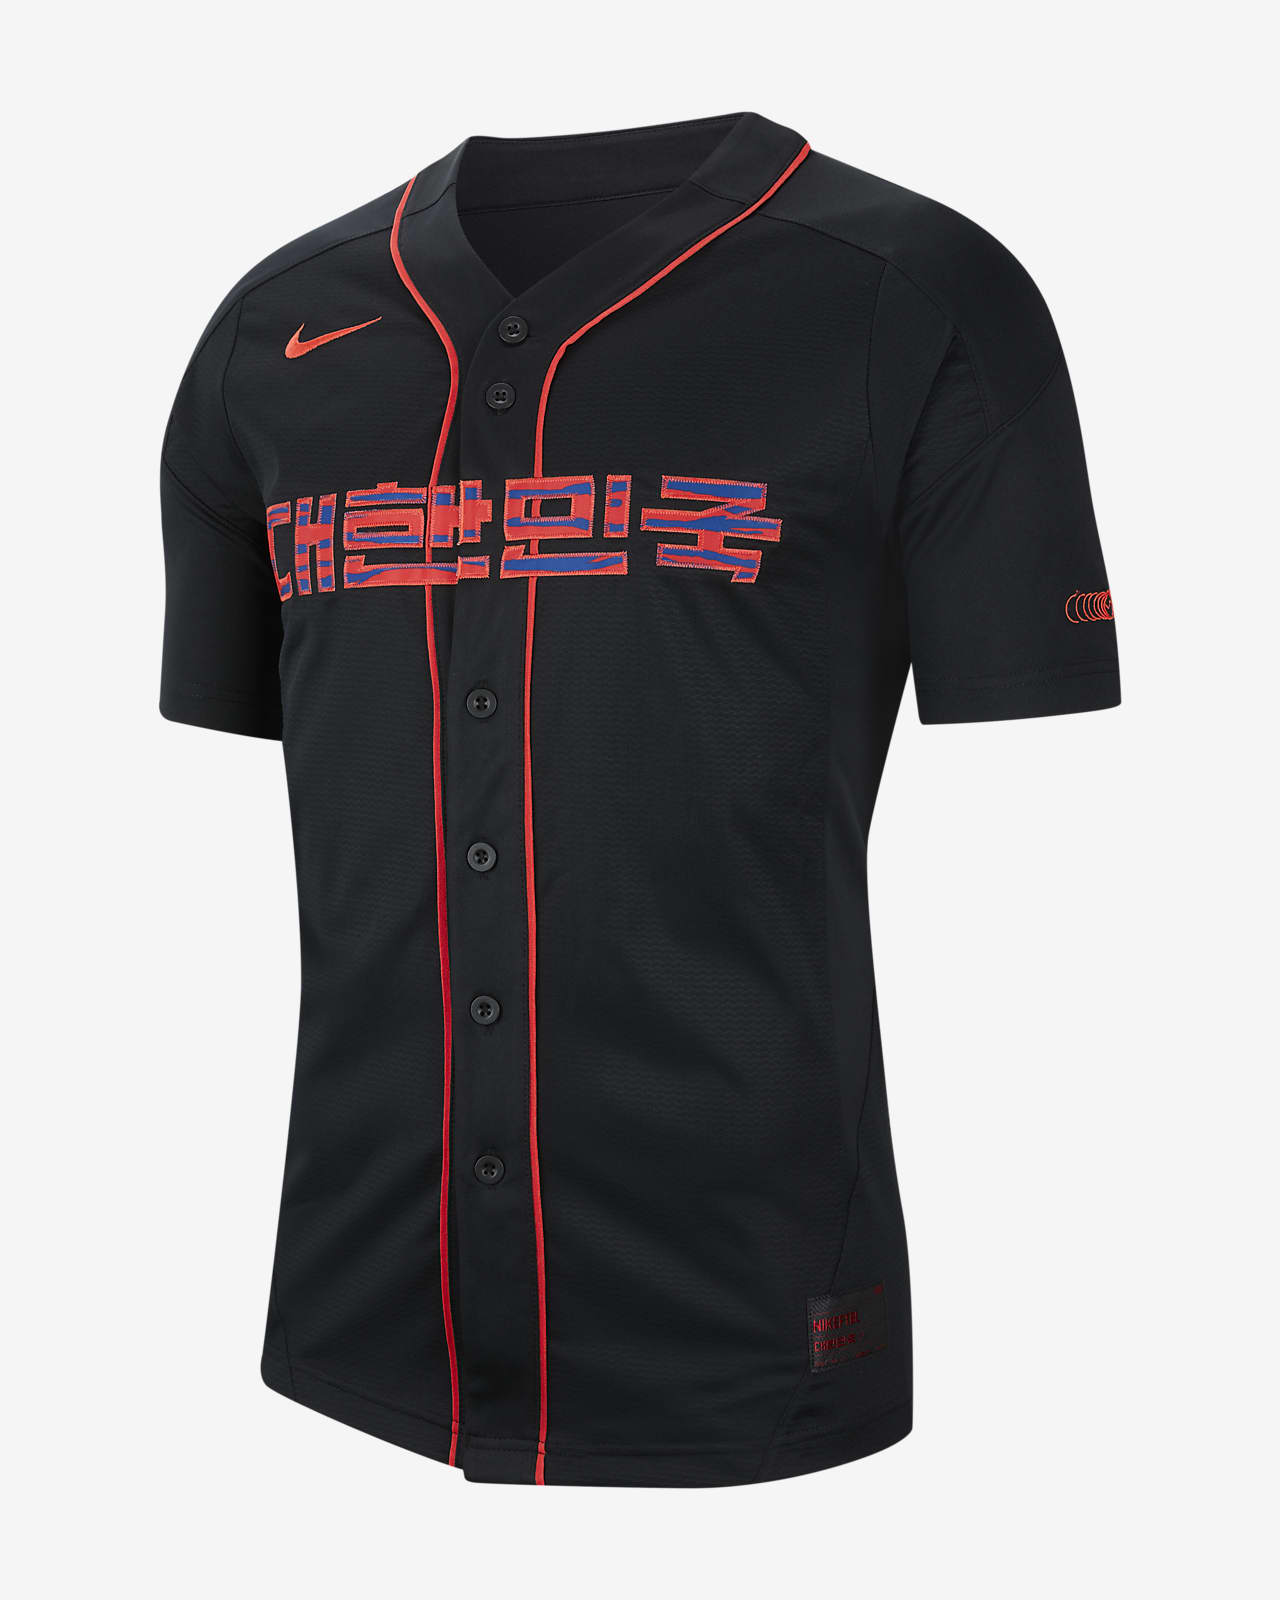 korean baseball jersey for sale